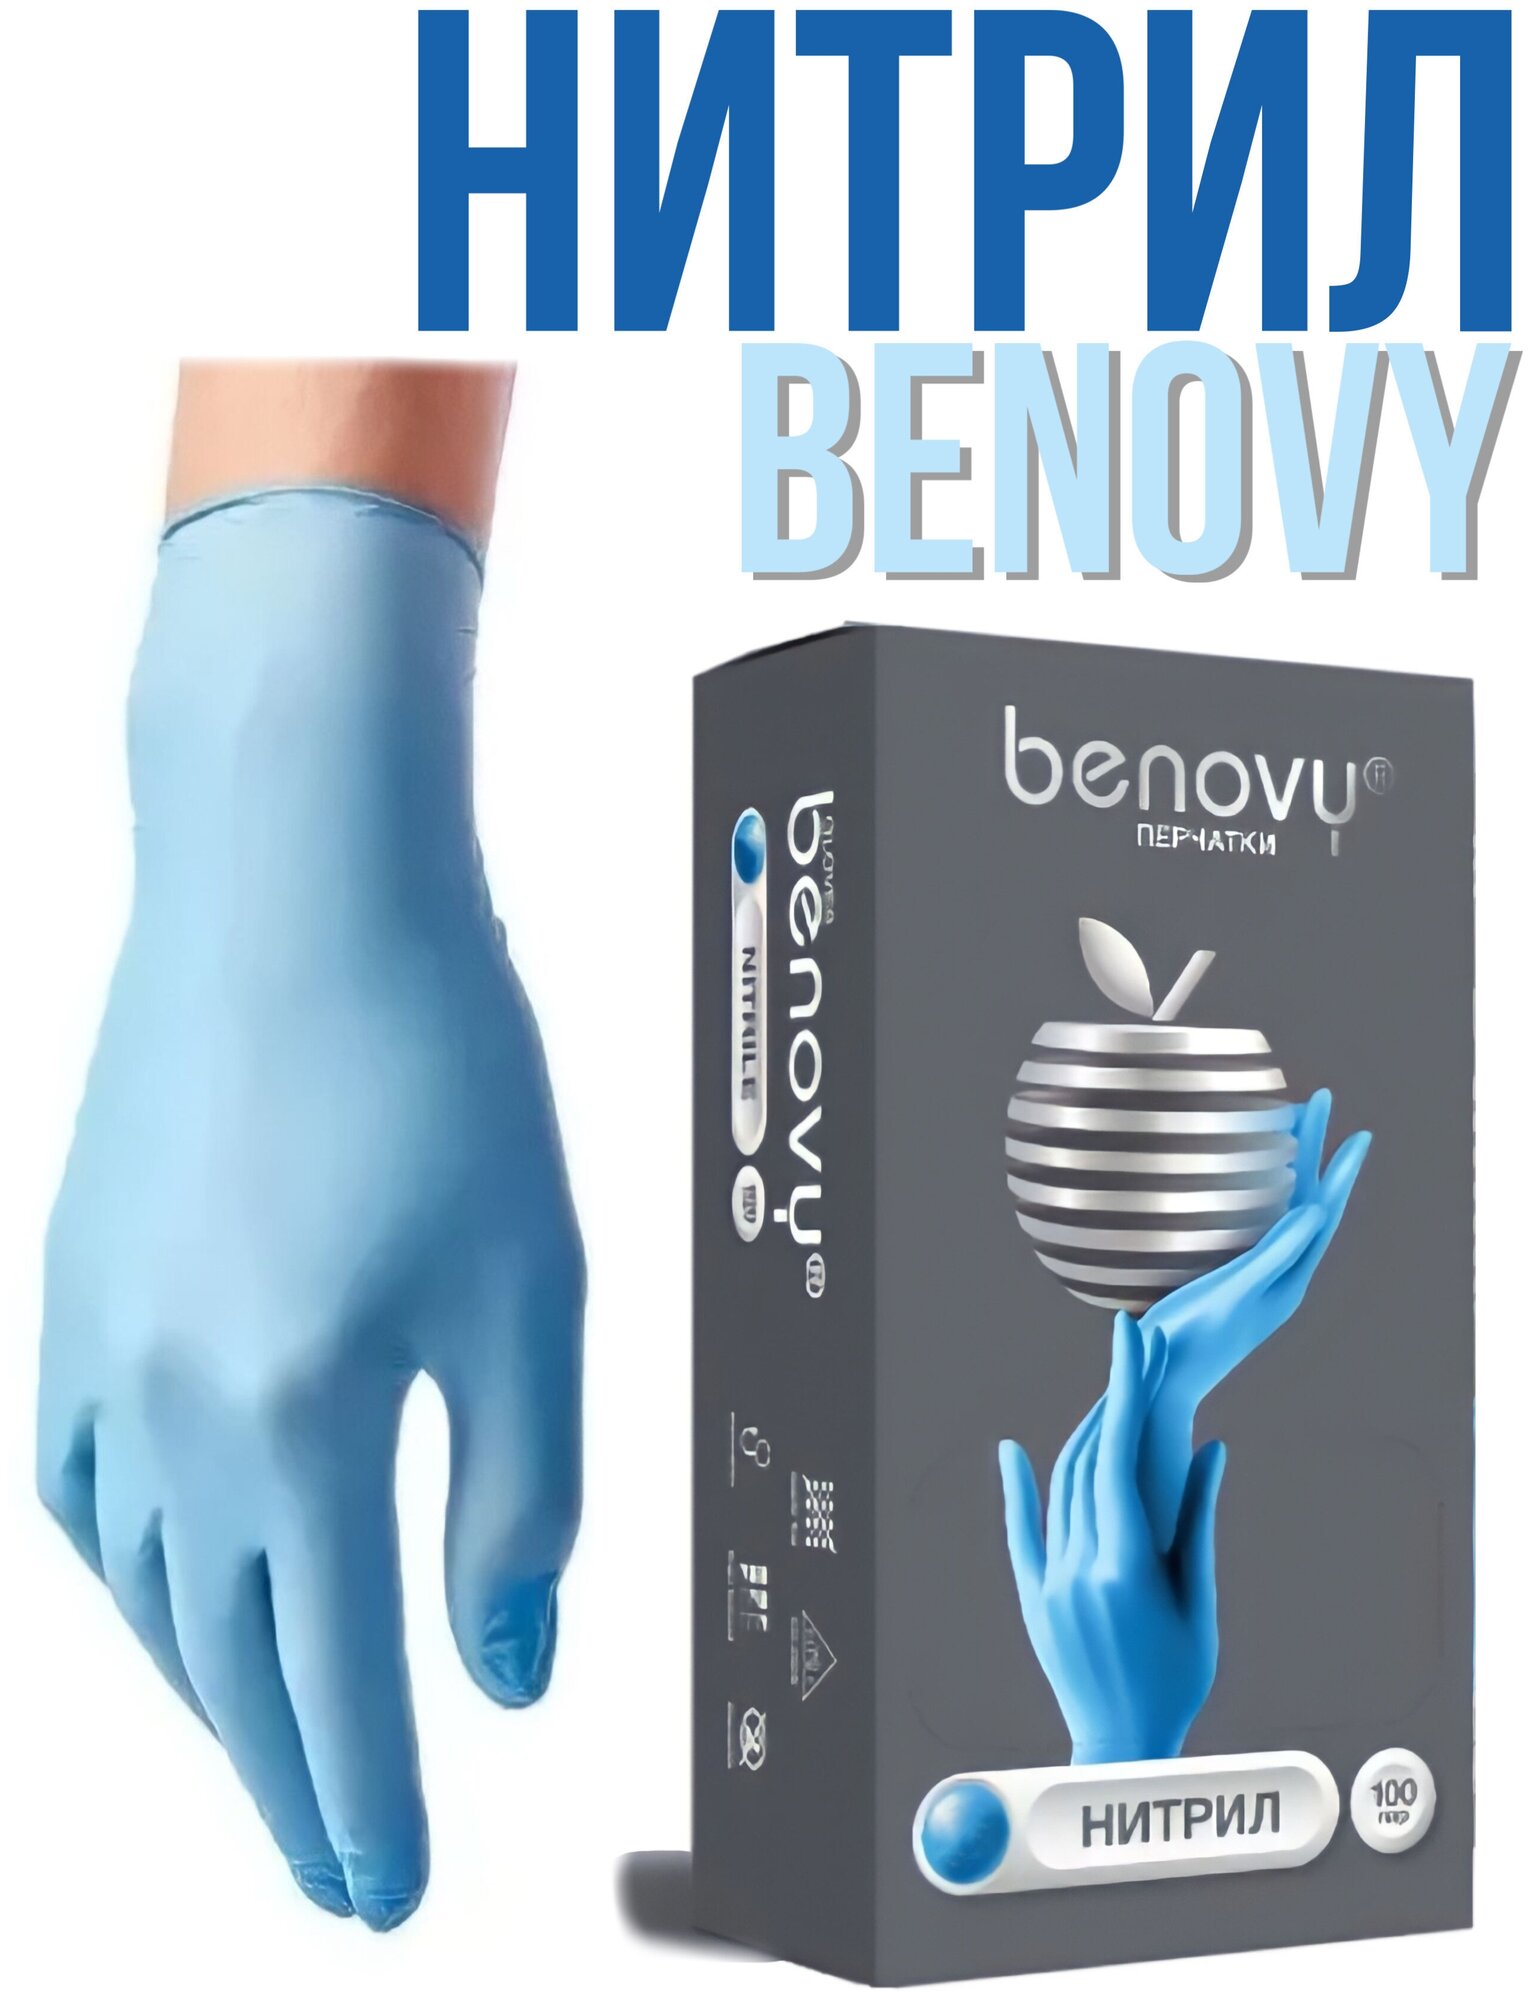 Перчатки медицинские BENOVY нитриловые голубые 100 пар, 200шт. XS